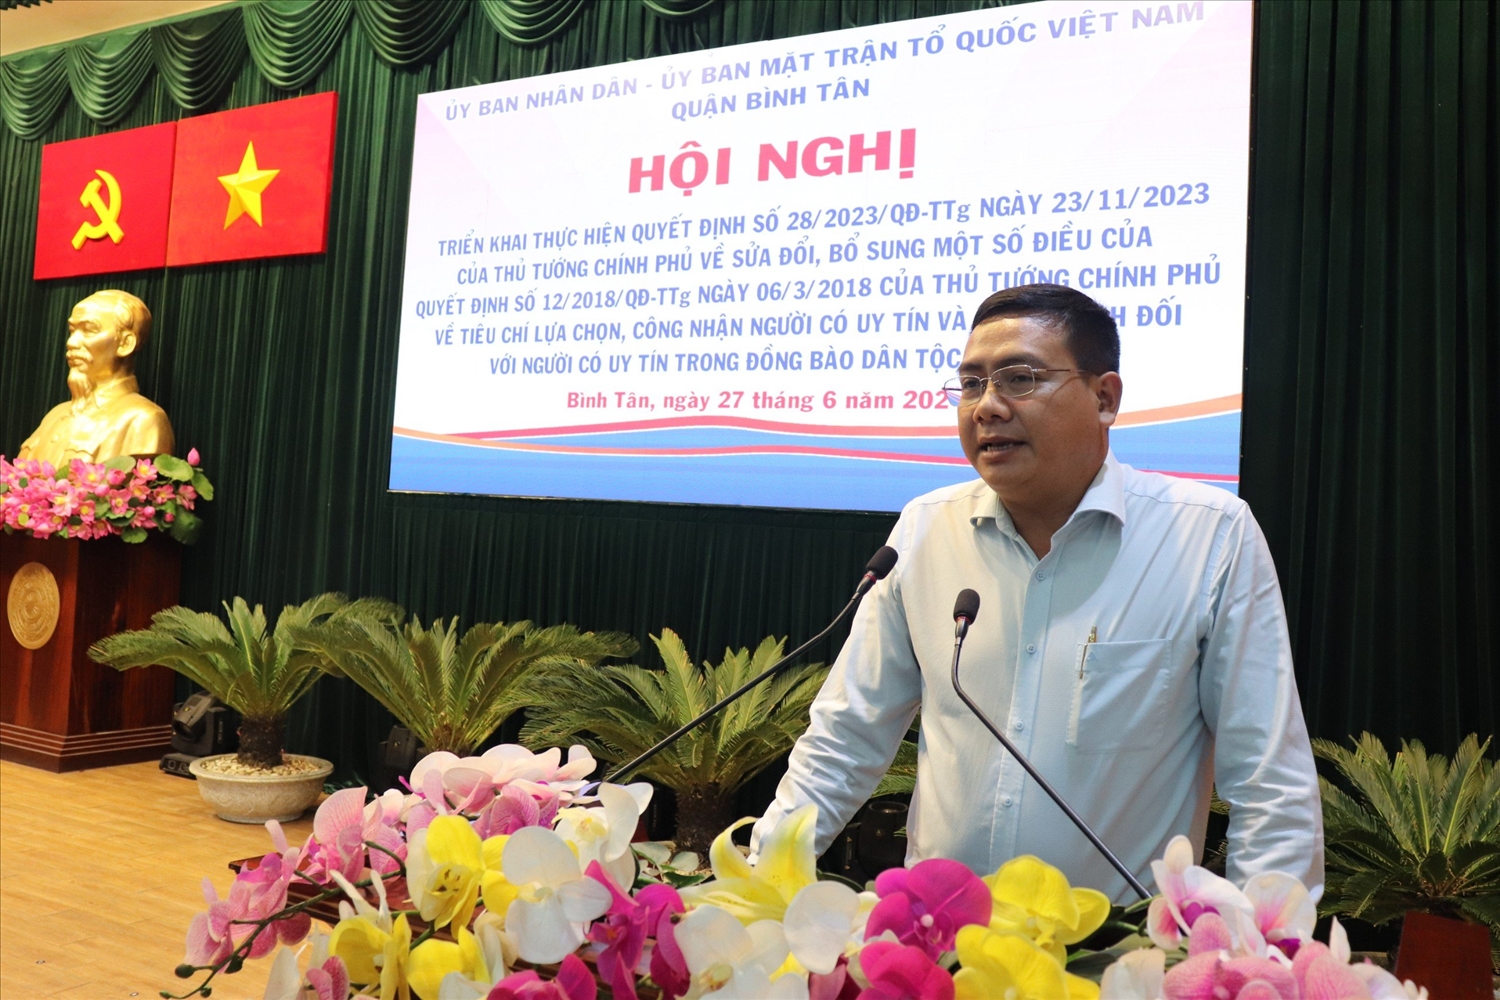 TIN: Quận Bình Tân, TP. Hồ Chí Minh: Hội nghị Triển khai thực hiện Quyết định số 28 của Thủ tướng Chính phủ